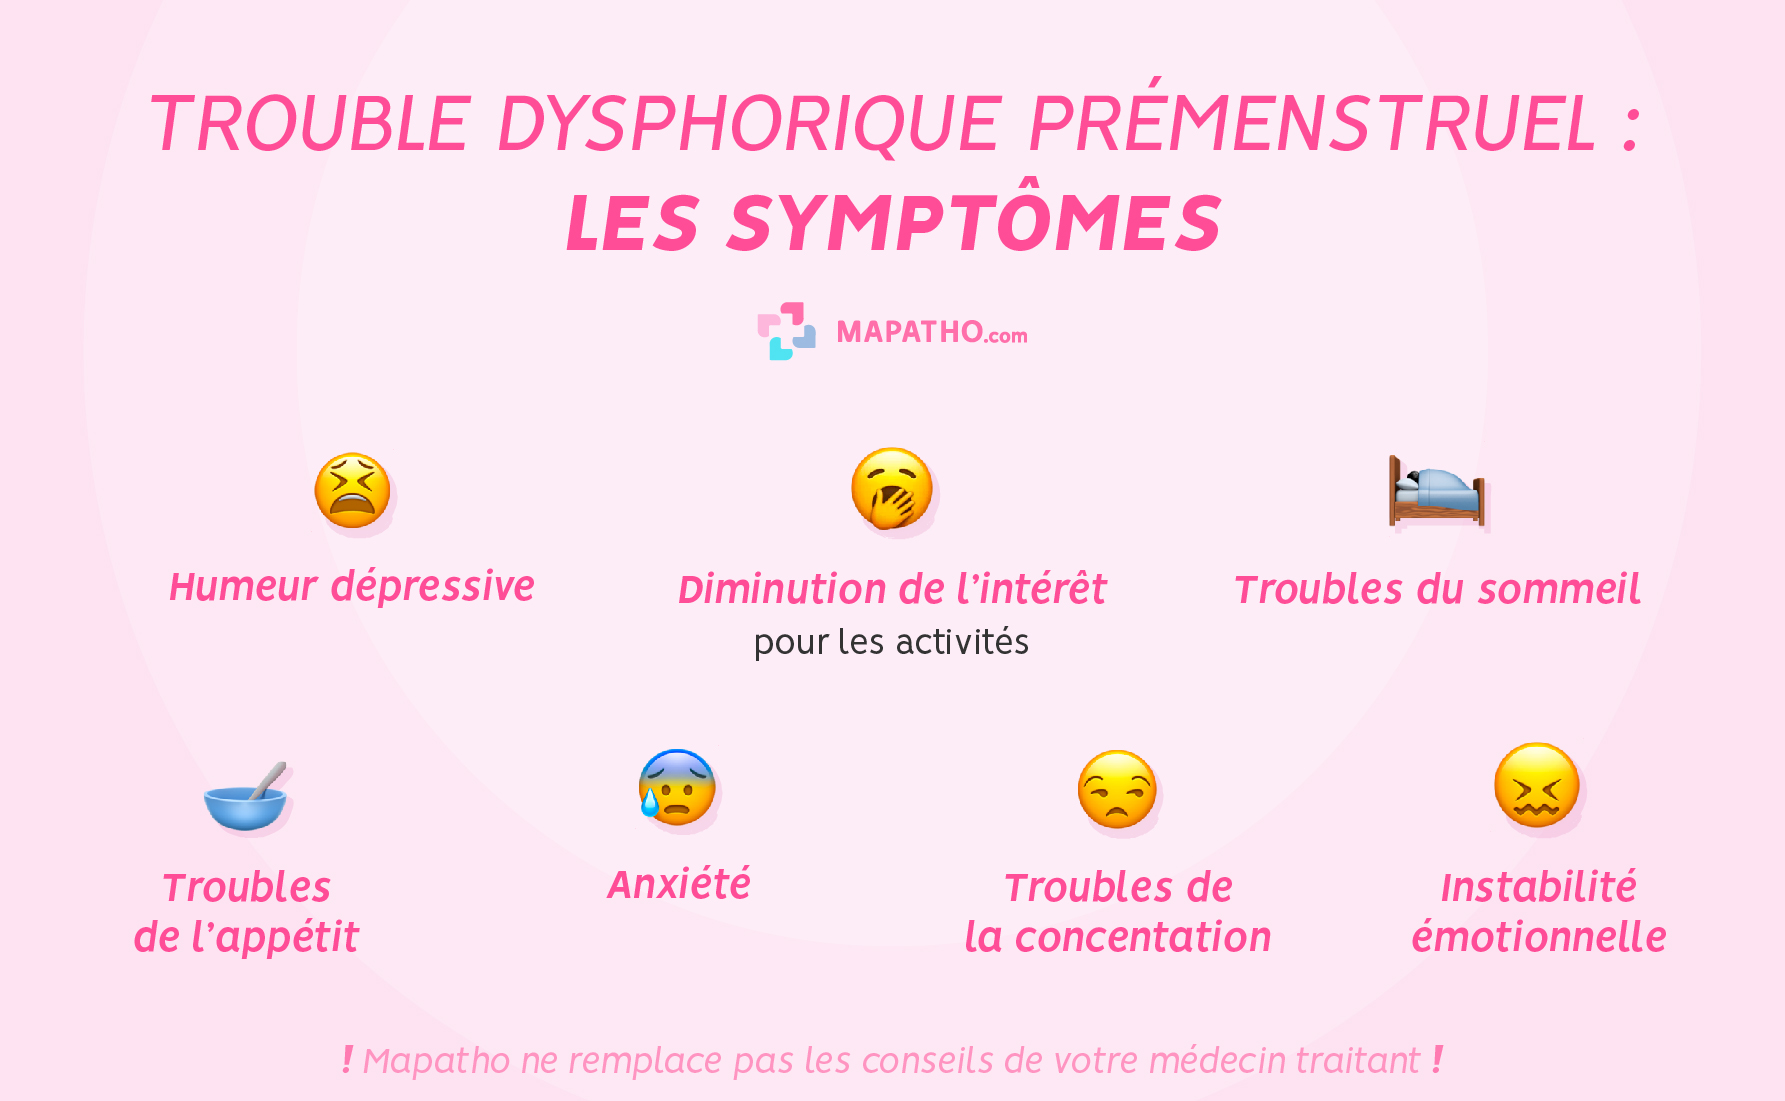 Les symptômes trouble dysphorique premenstruel